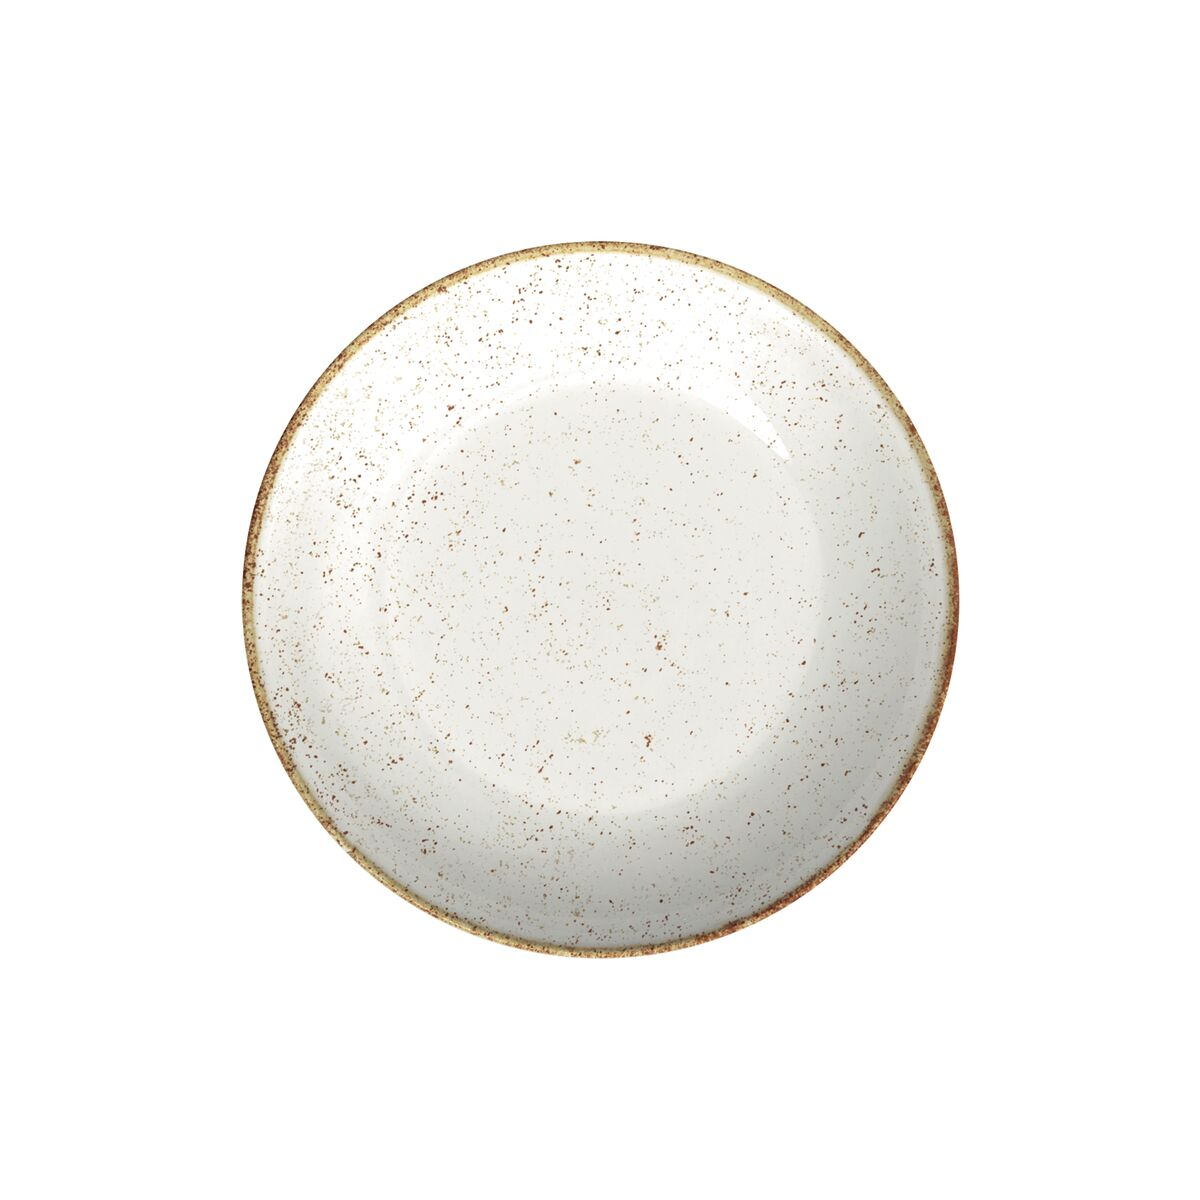 Plato Hondo Tramontina Rústico Marrón en Porcelana Decorada 22 cm